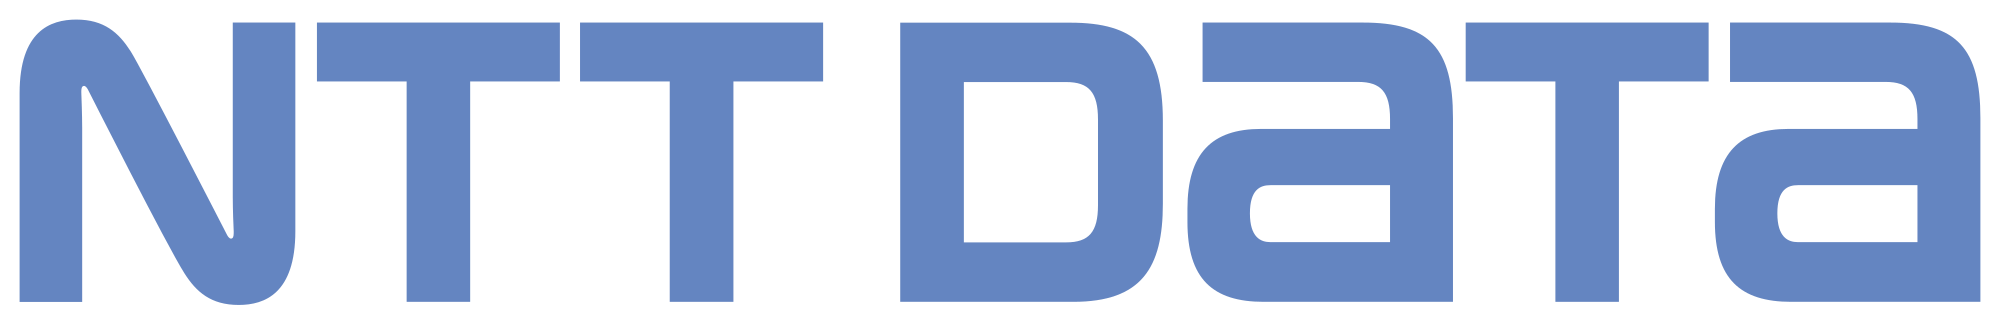 NTT DATA Brand Logo